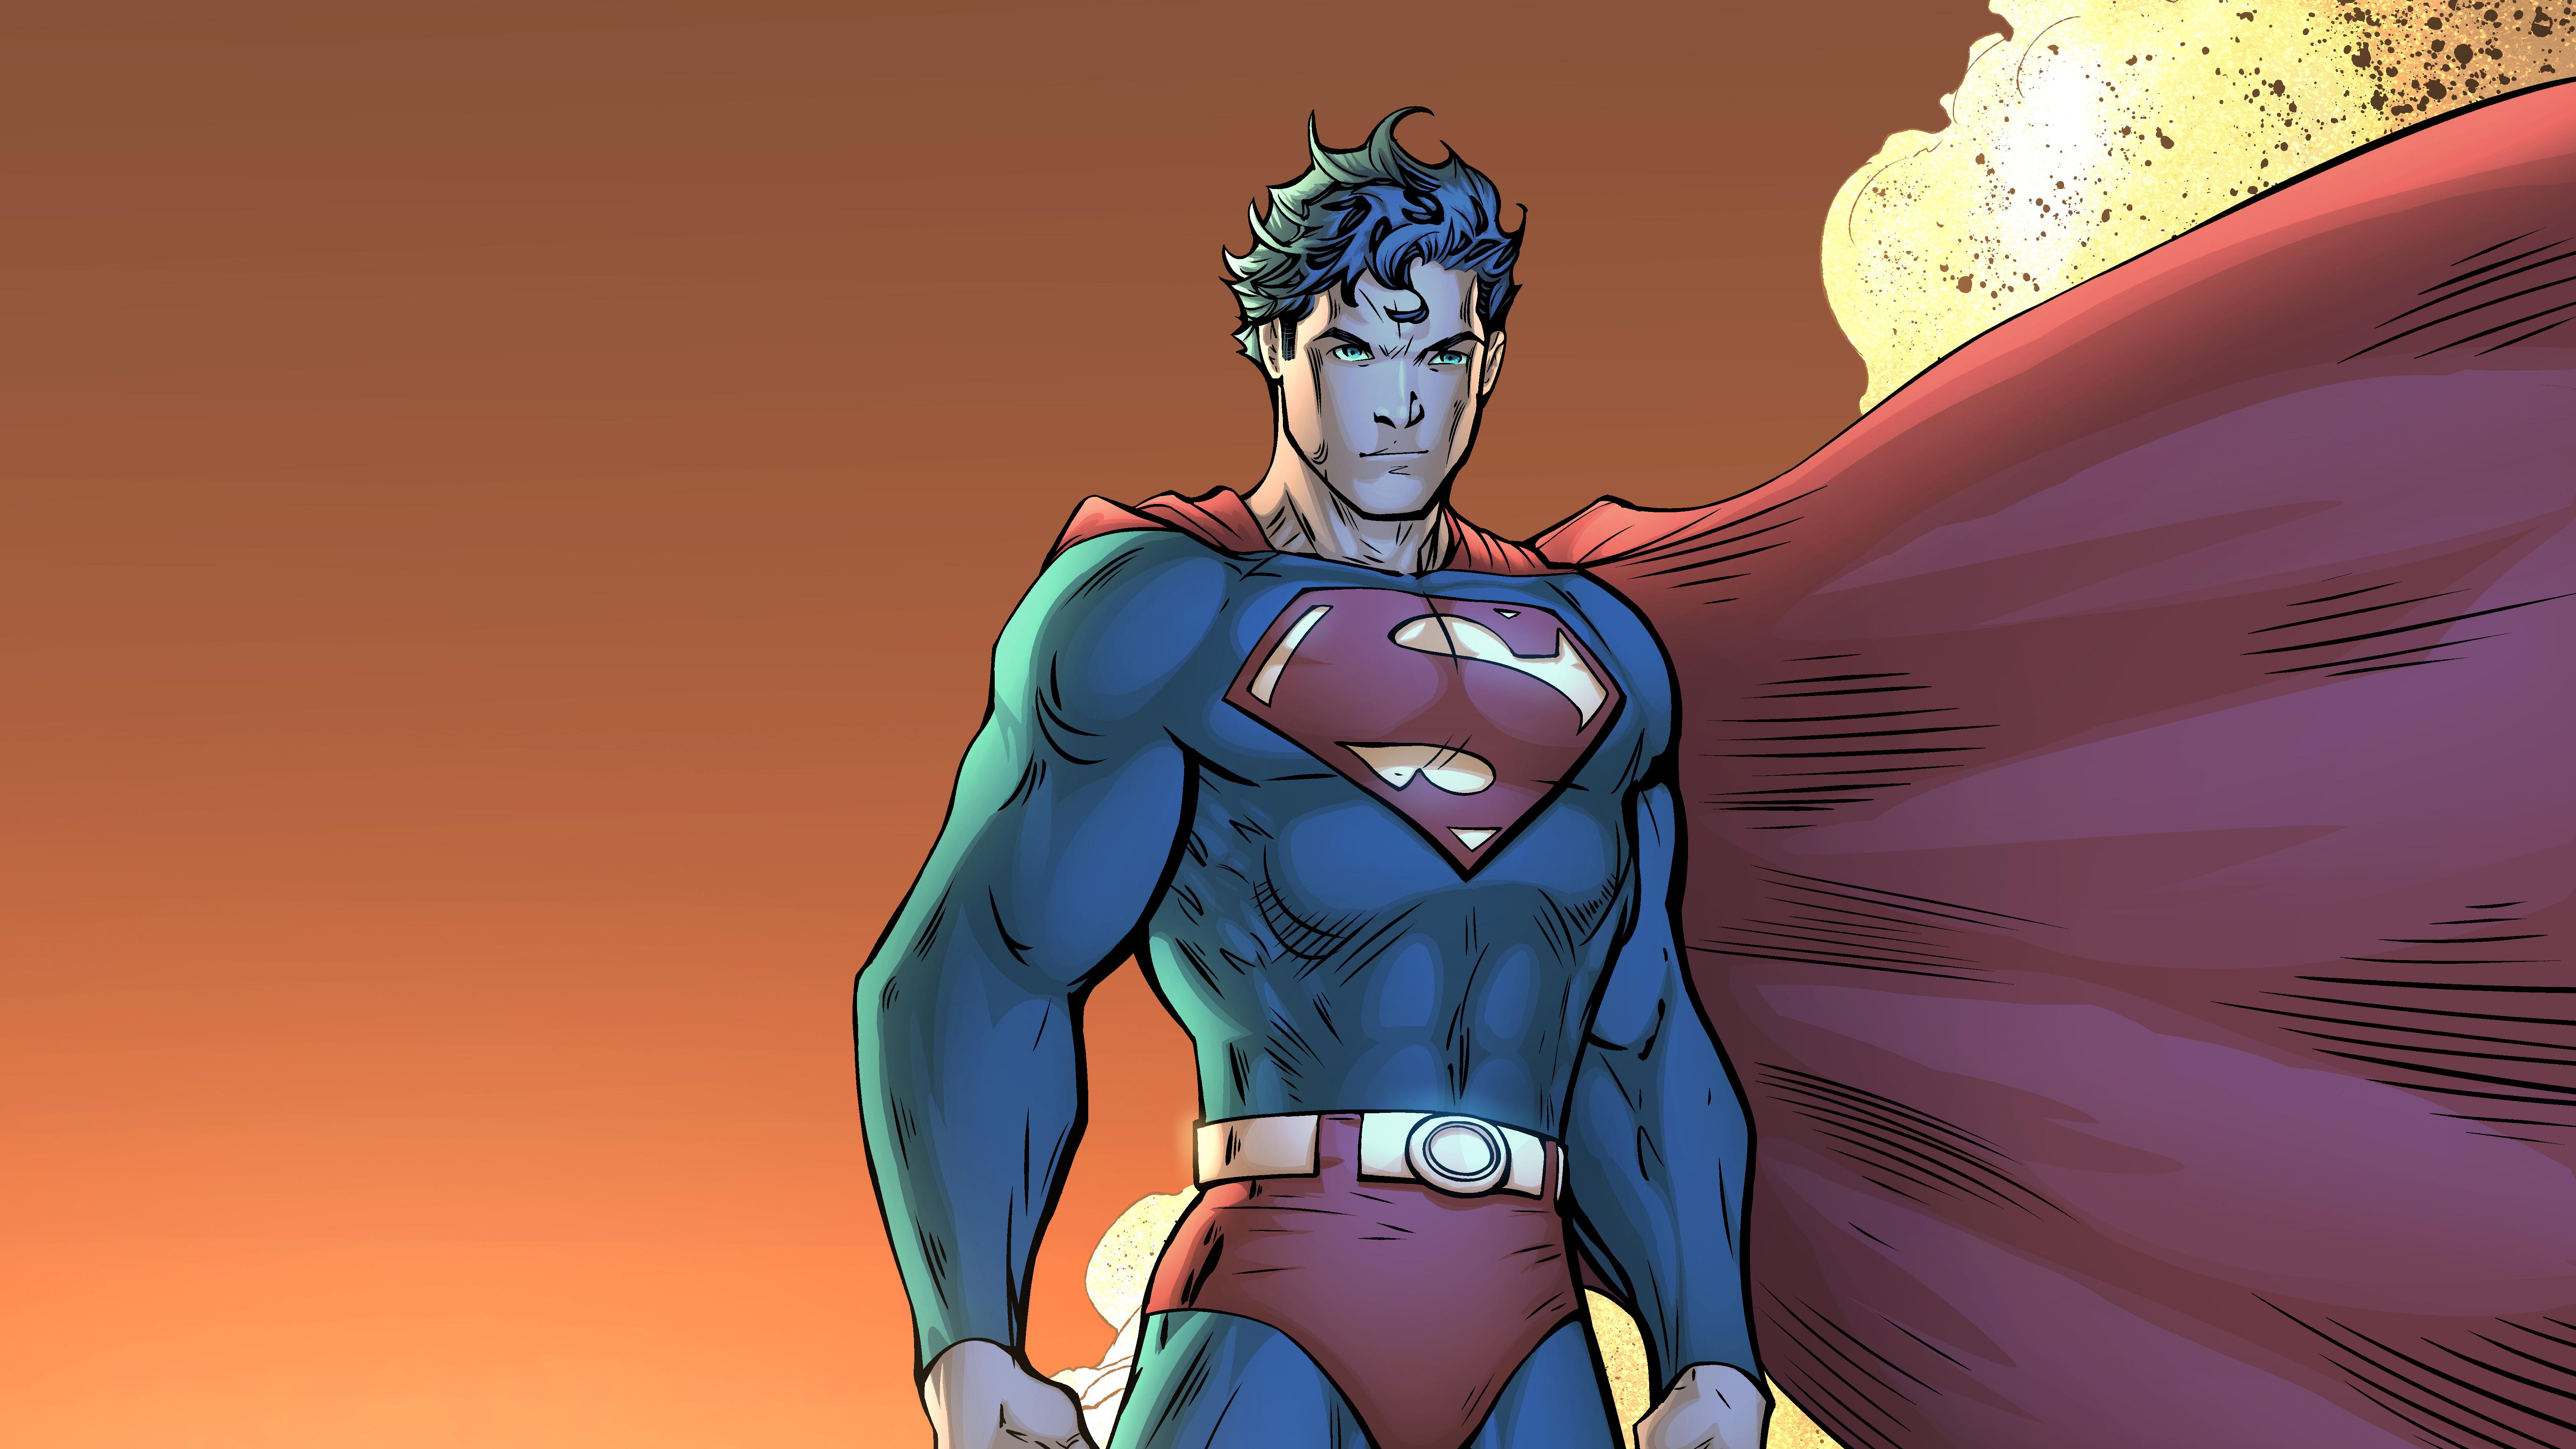 Lexica - ANIME SUPERMAN, BOKU NO HERO STYLE.